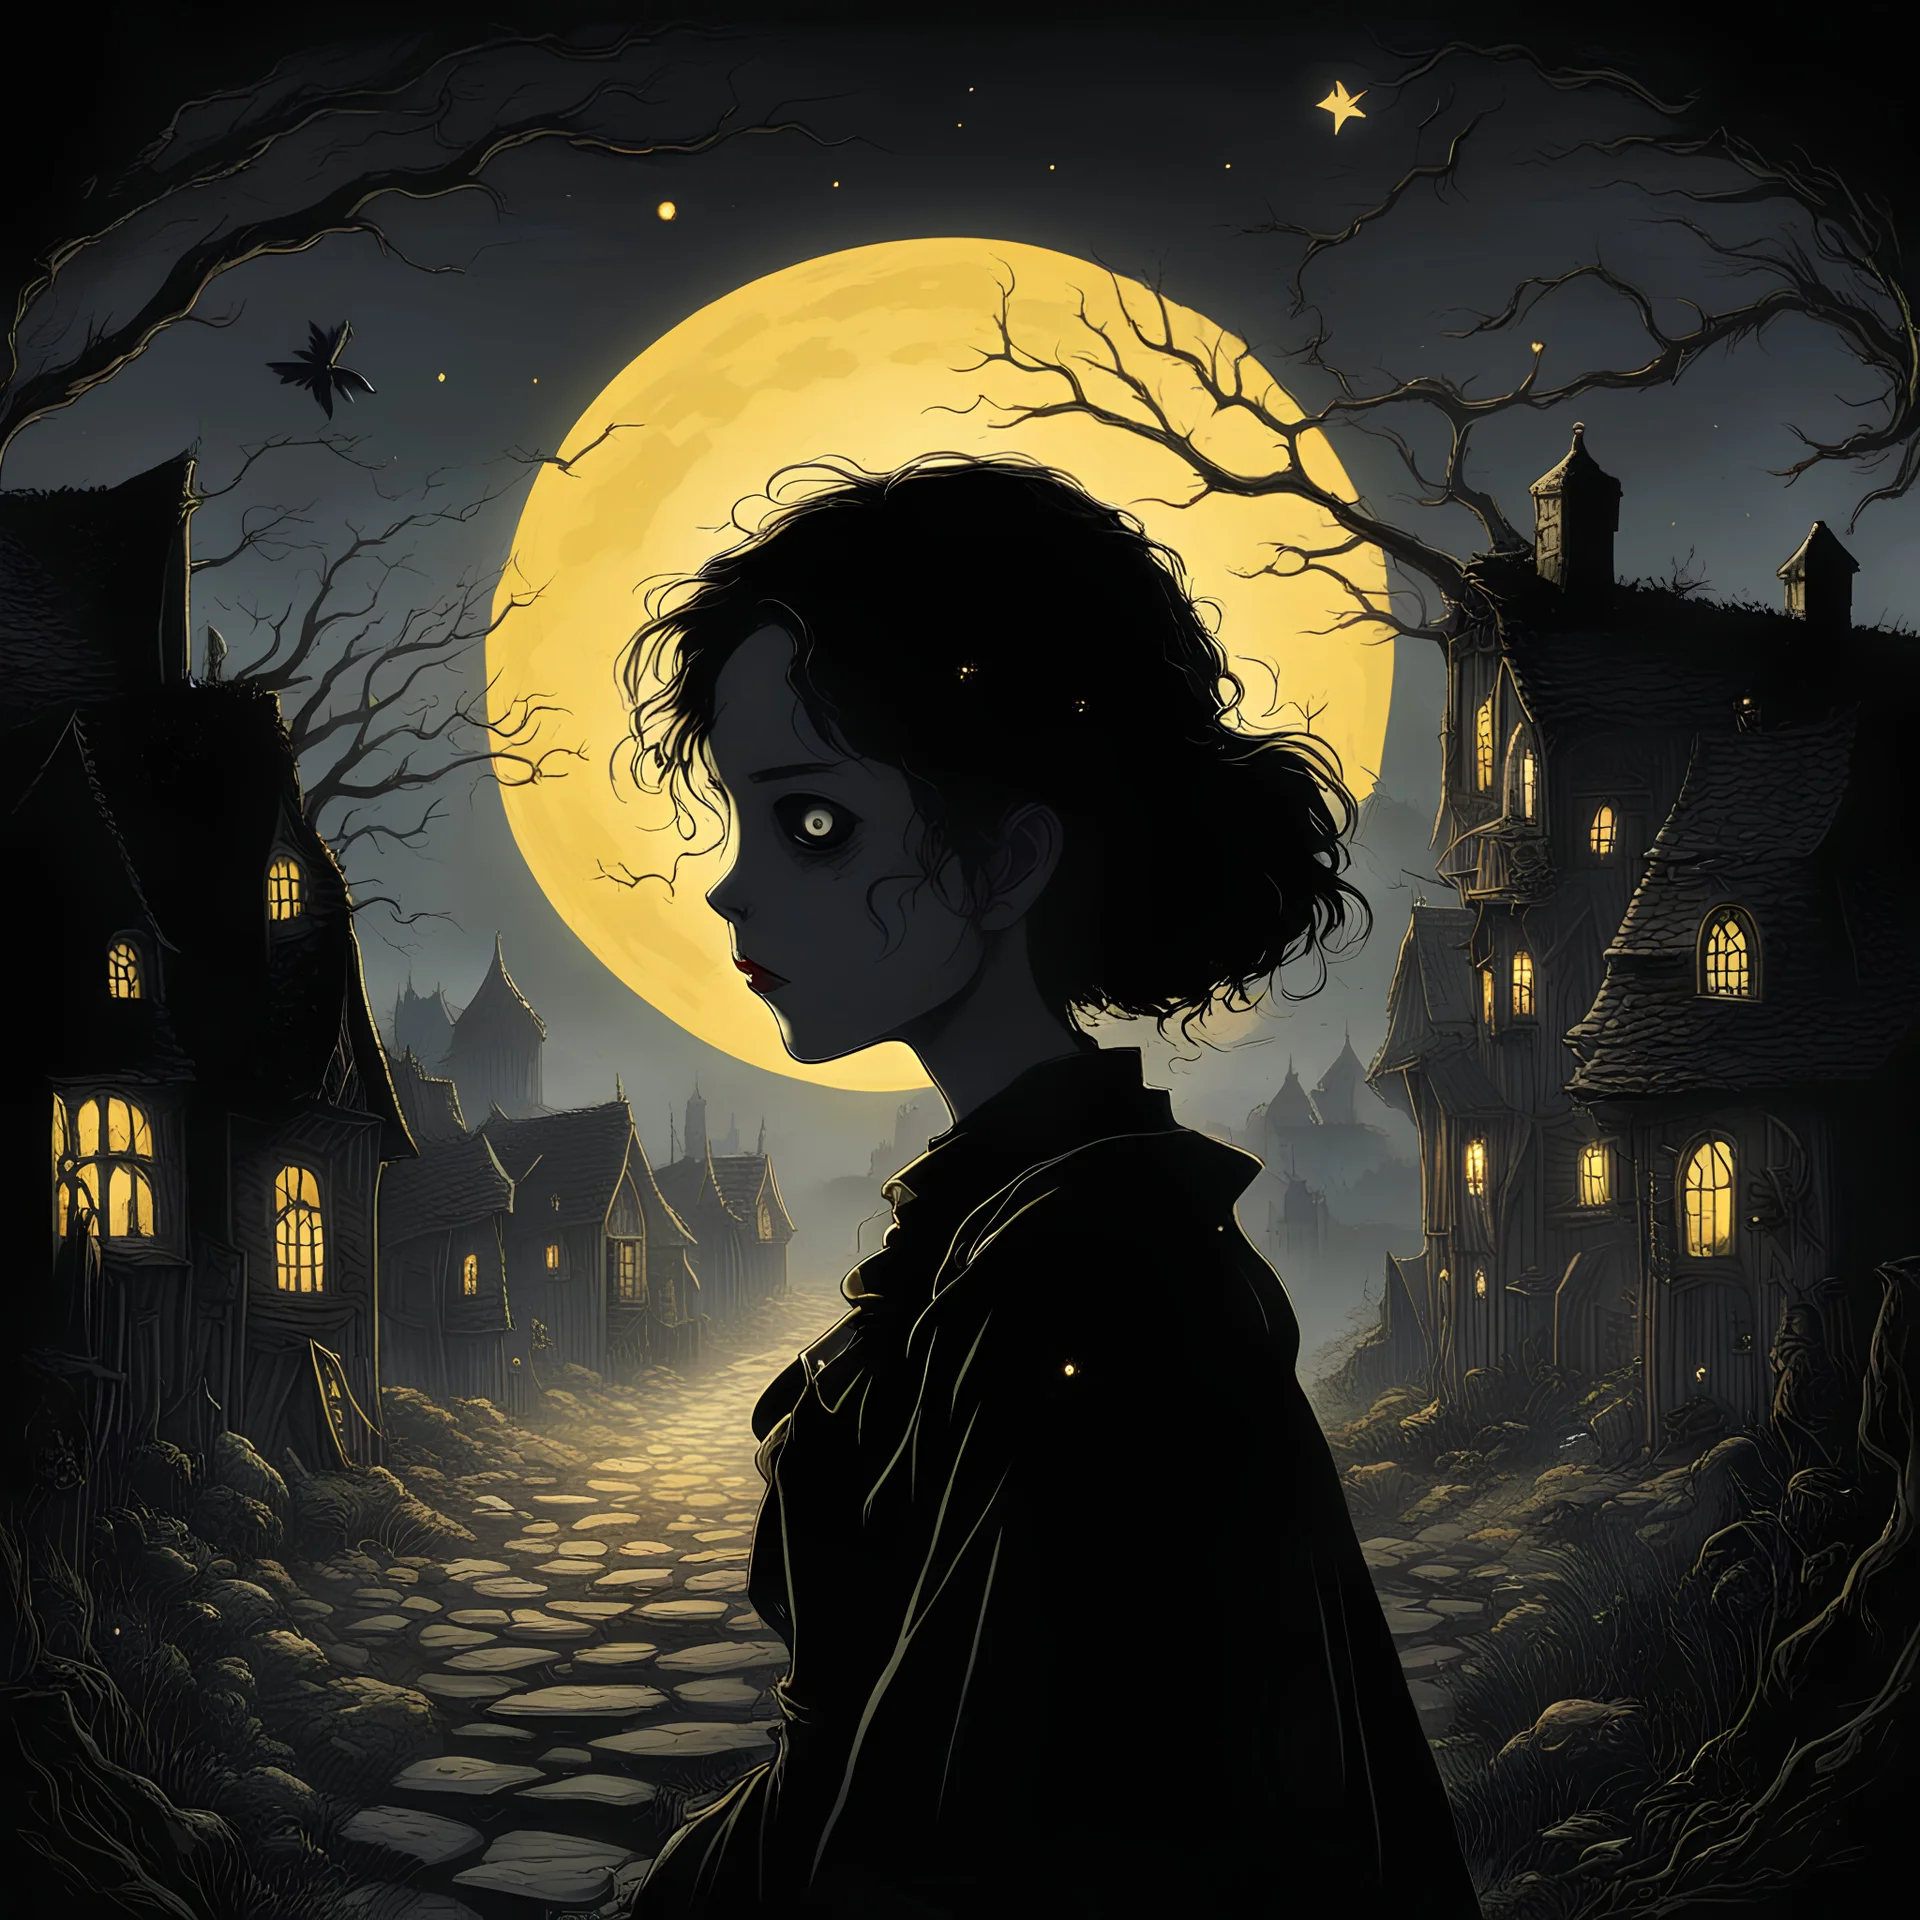 L'image de couverture du livre est un village désolé, plongé dans l'obscurité de la nuit. Mort, sang. Au centre de l'image, une princesse adolescente portant une broche en or. symbolisant le contraste entre la lumière et l'ombre. Au-dessus d'eux, la silhouette d'une broche en or brille faiblement, évoquant le mystère de la mort et les tragiques événements. Tim Burton style